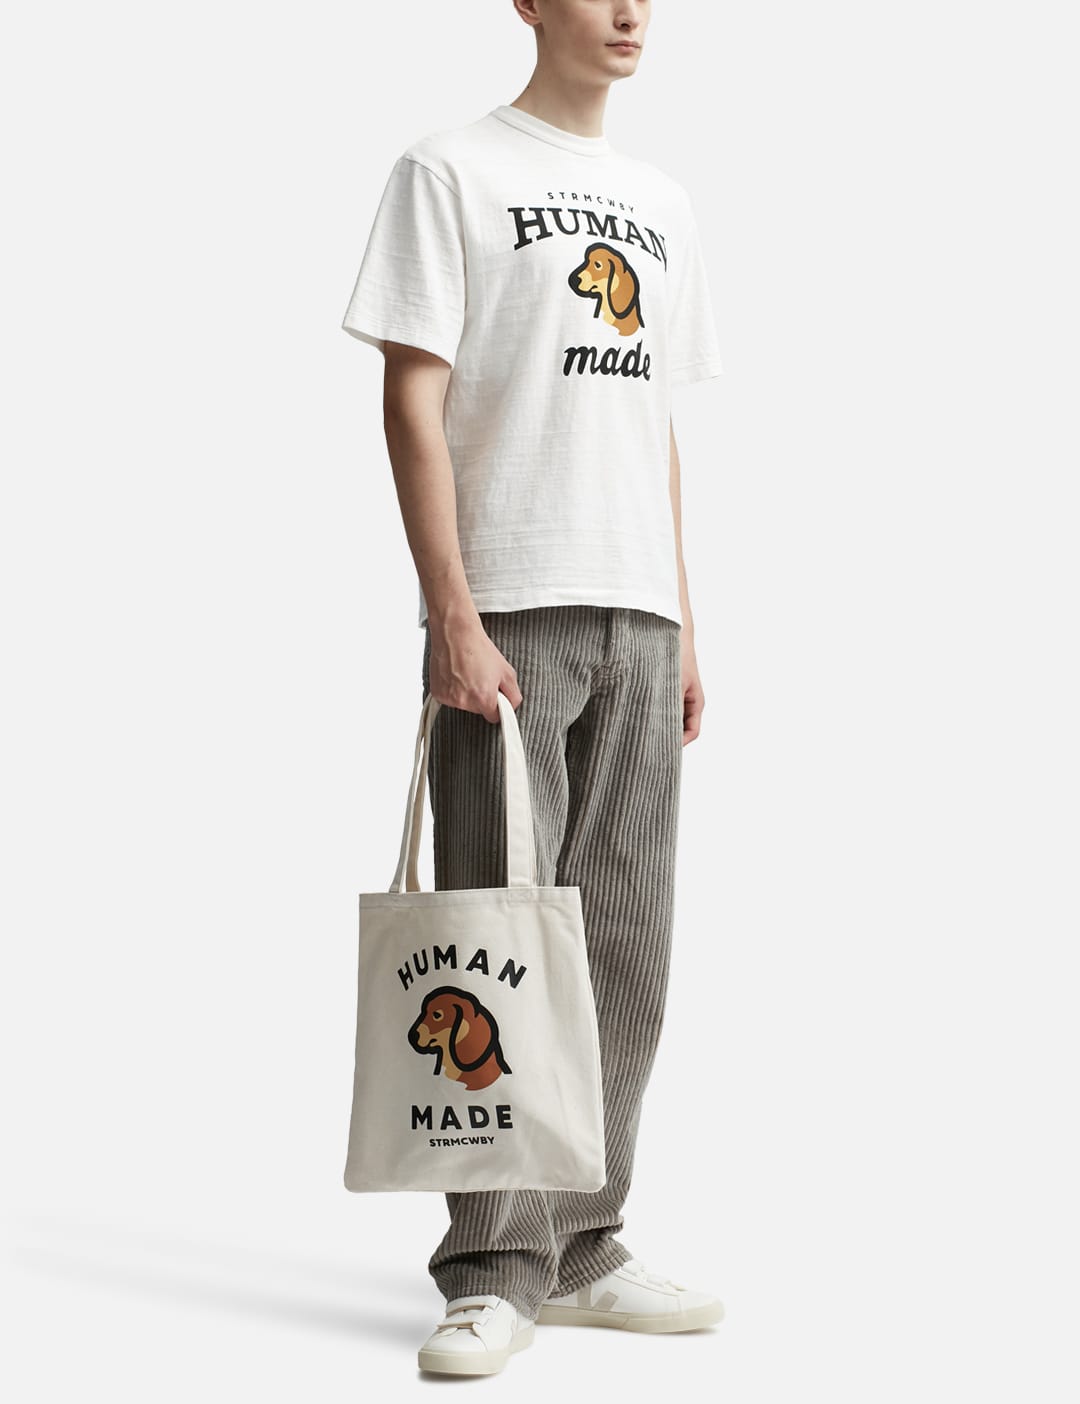 商品はお値下げ HUMAN MADE x KAWS Made Graphic T-Shirt | umma.hu